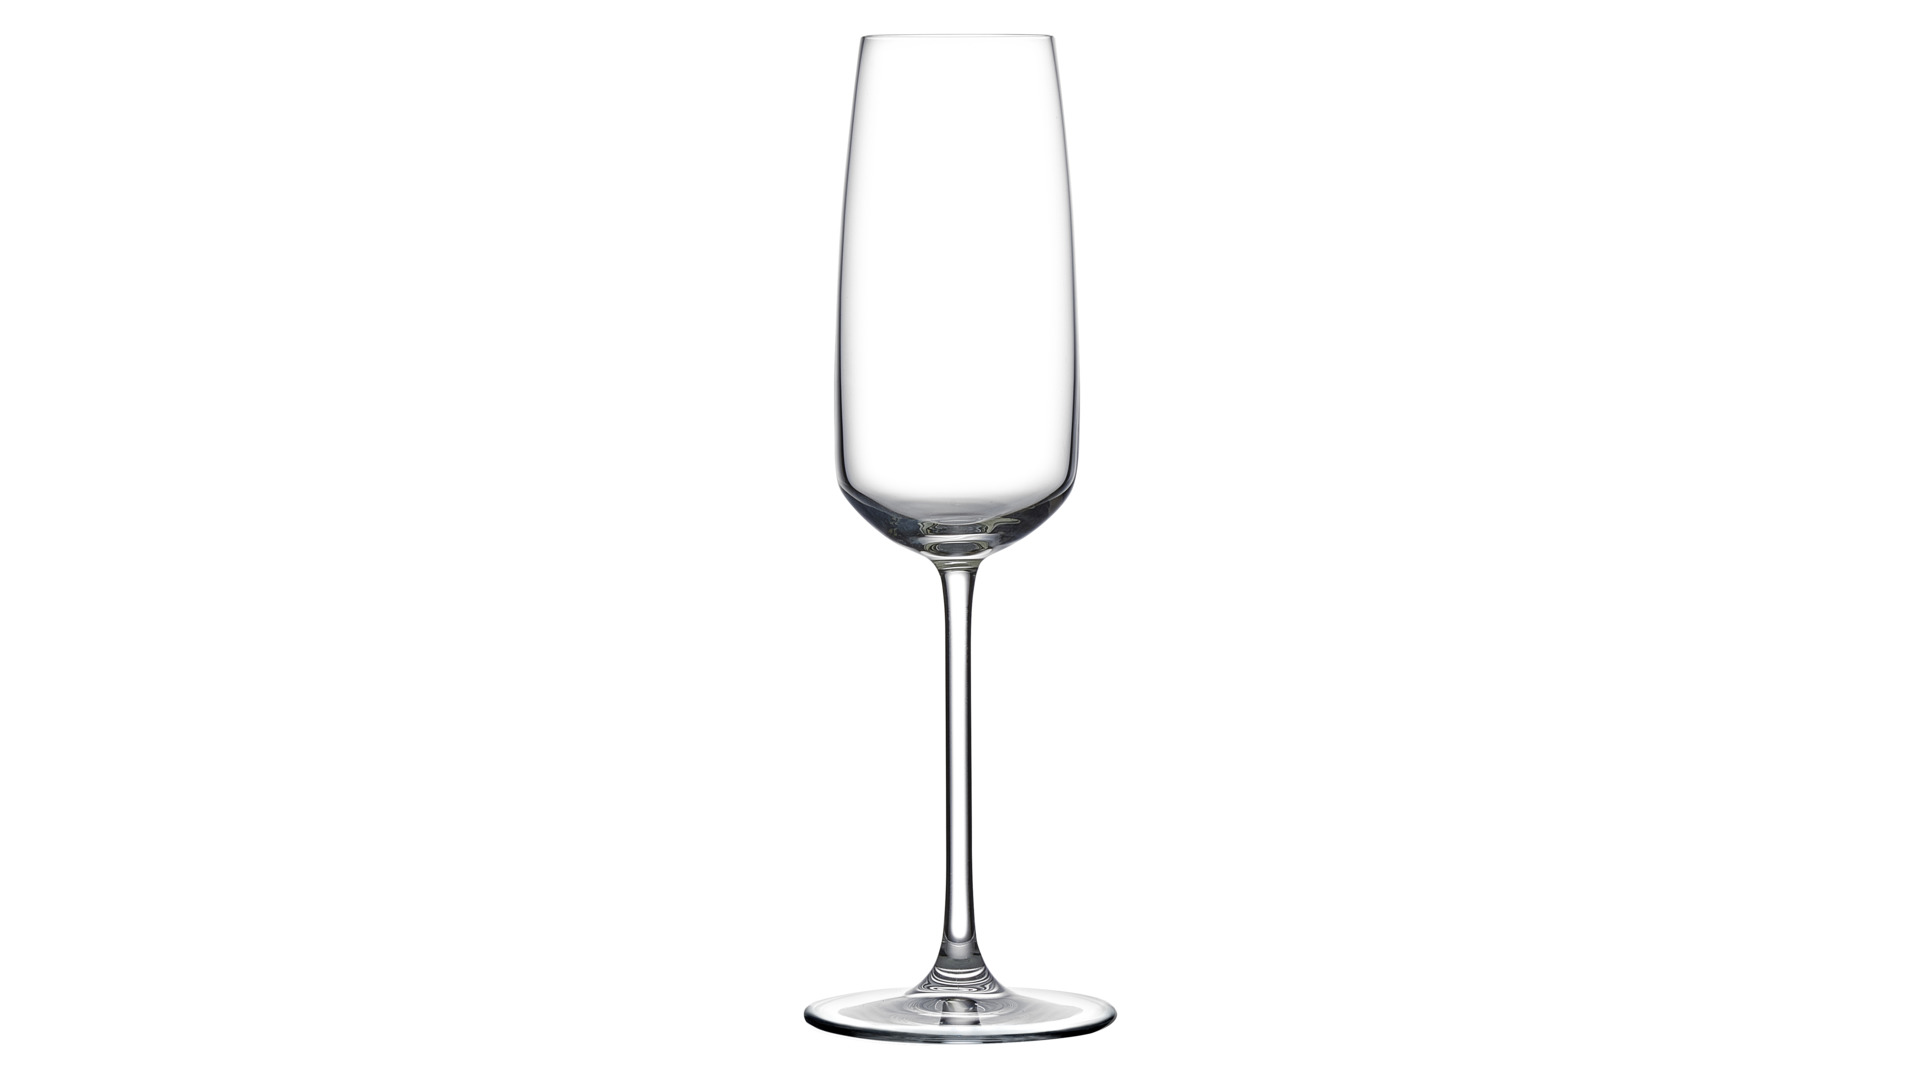 Набор бокалов для шампанского Nude Glass Мираж 245 мл, 2 шт, хрусталь бессвинцовый